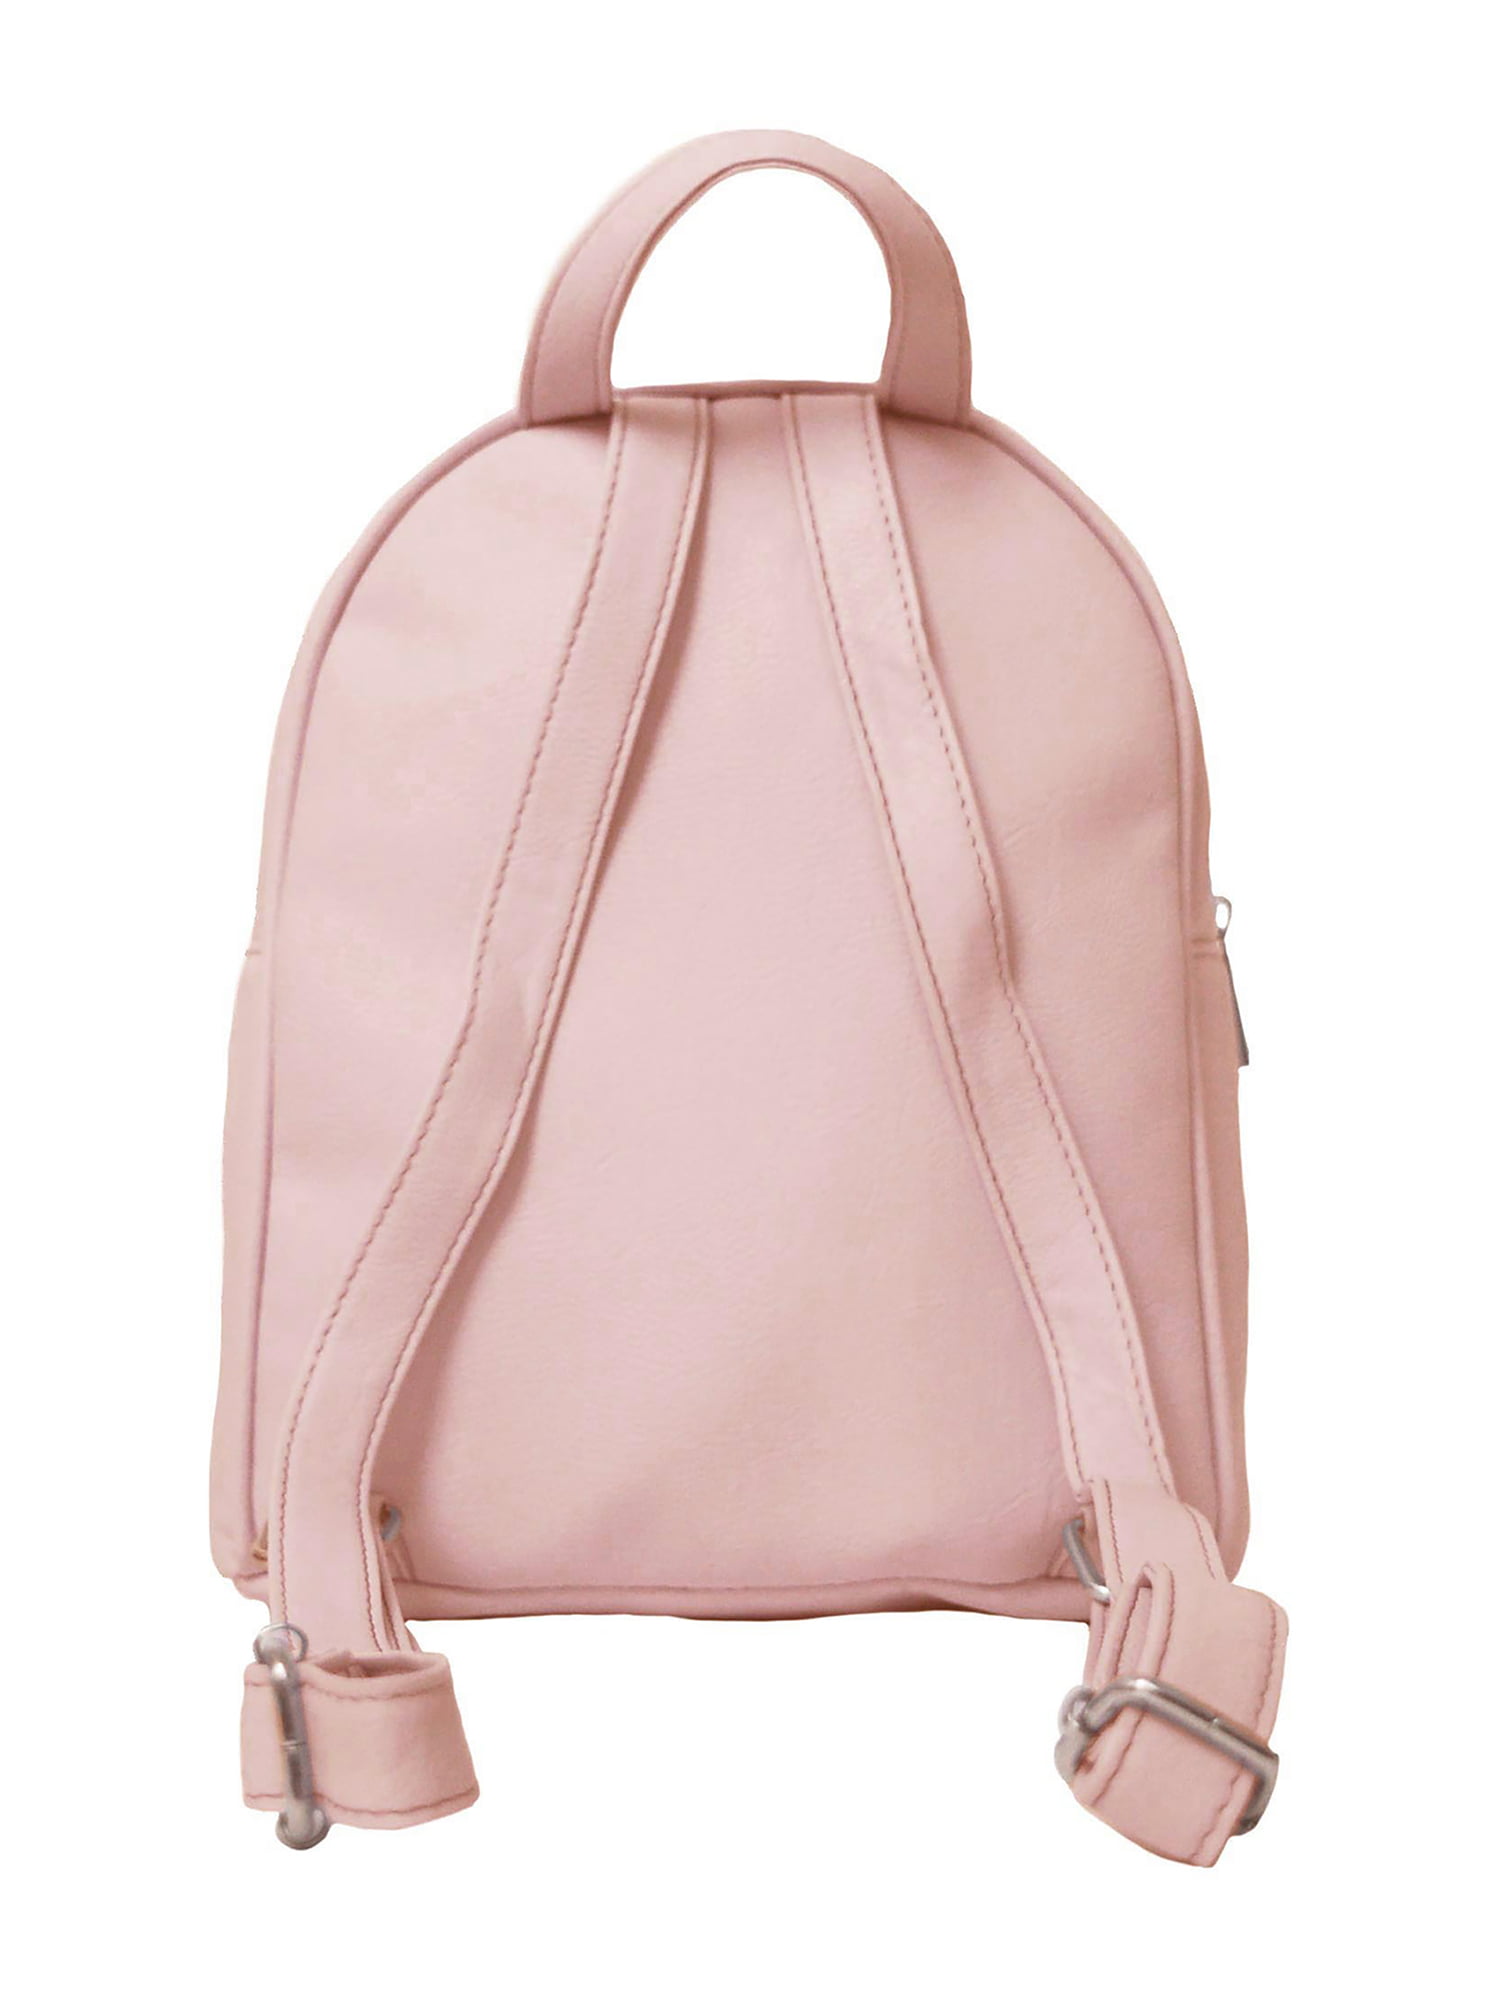 OMG Accessories Kids' Unicorn Queen Duffle Bag - Pink